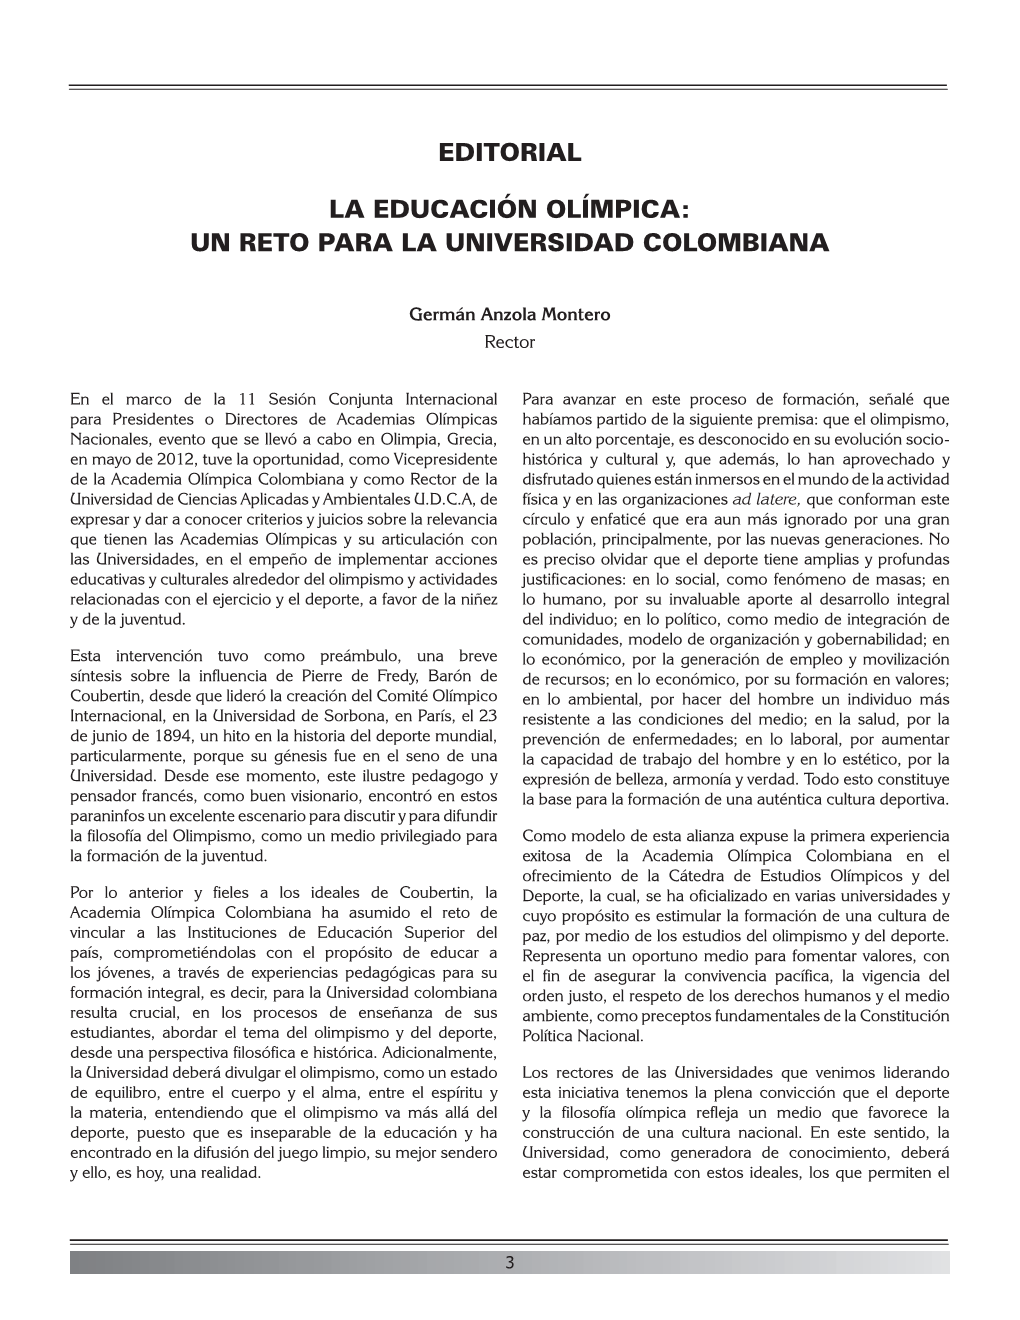 Editorial La Educación Olímpica